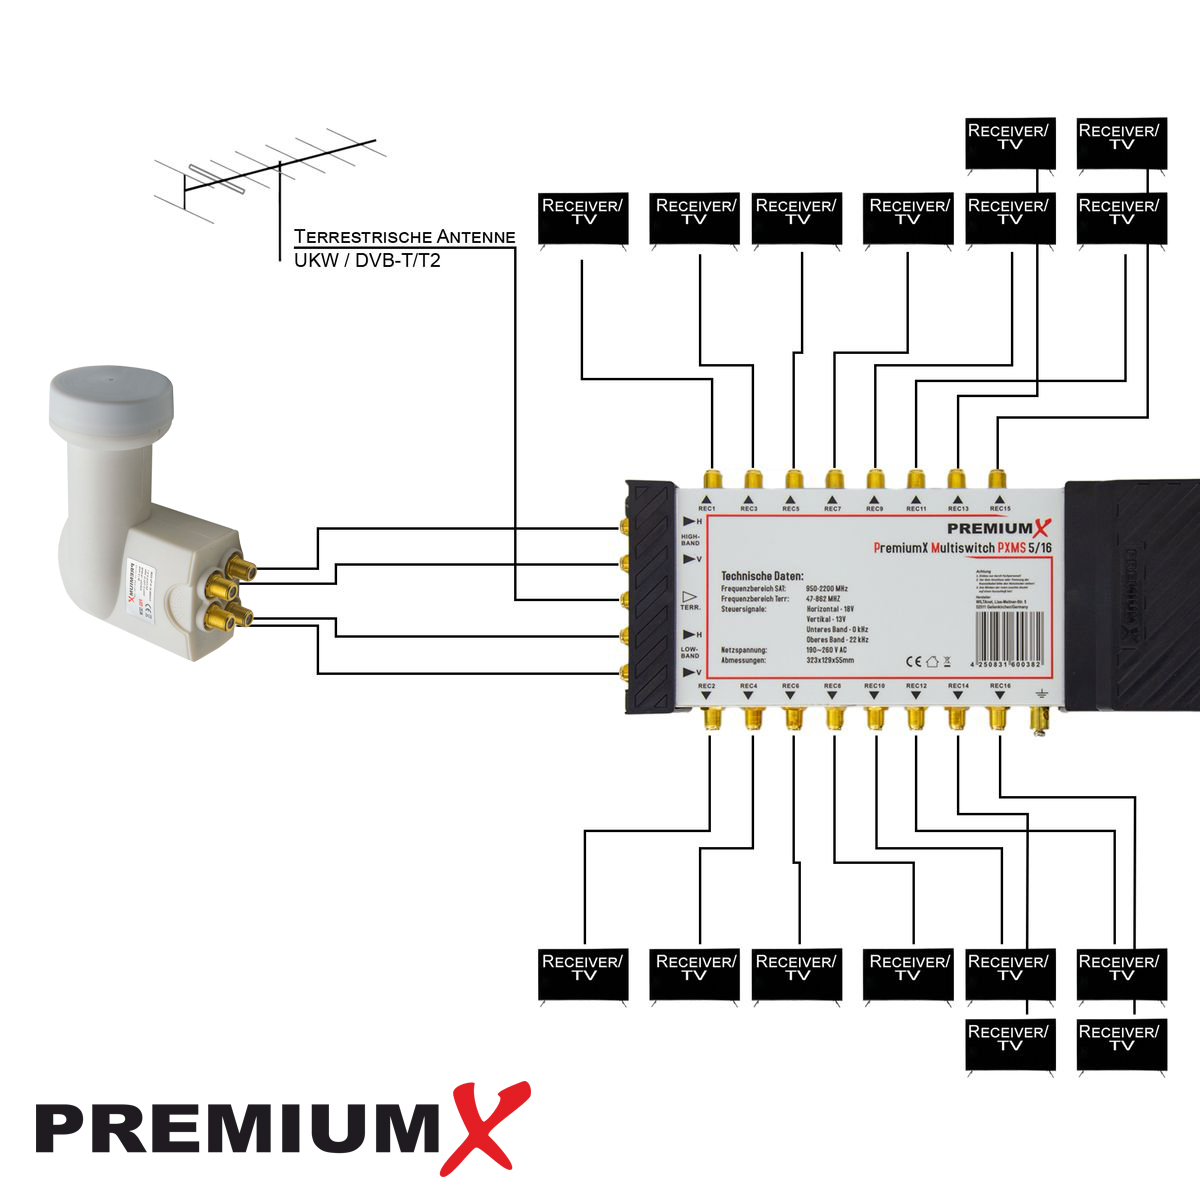 PREMIUMX Multischalter Set 5/16 Multiswitch Sat-Multischalter Quattro weiß SAT 40x LNB F-Stecker